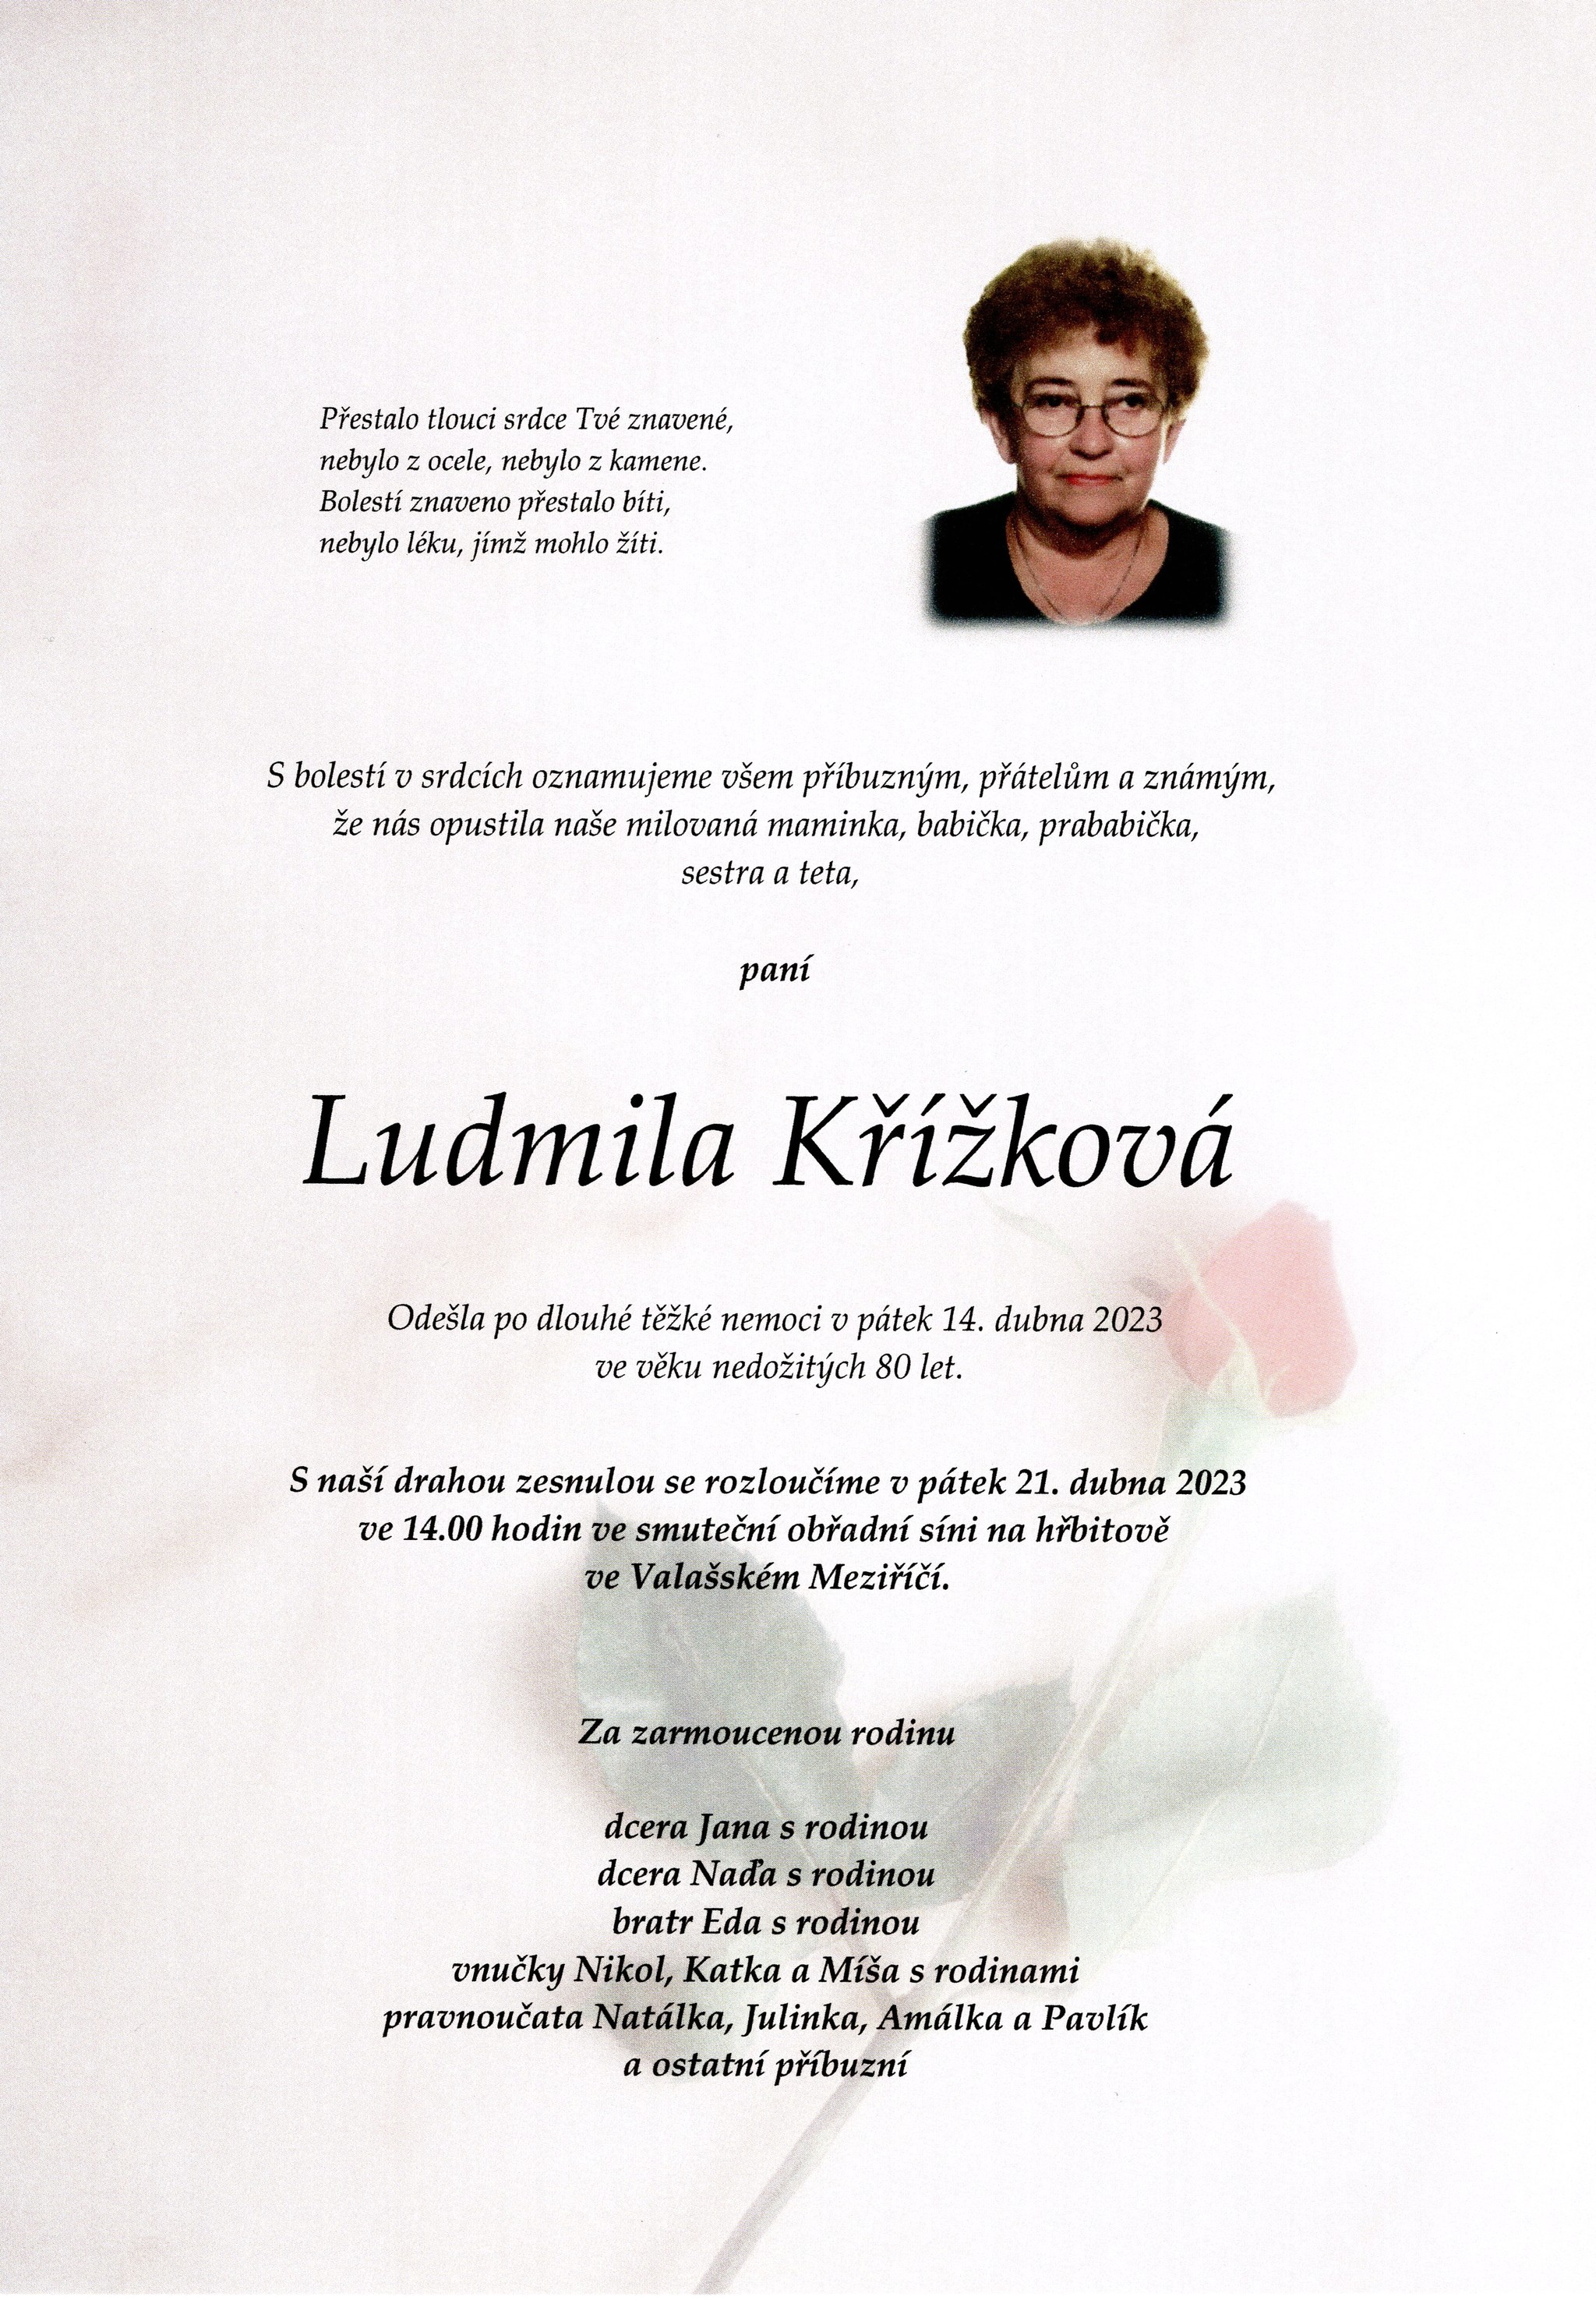 Ludmila Křížková